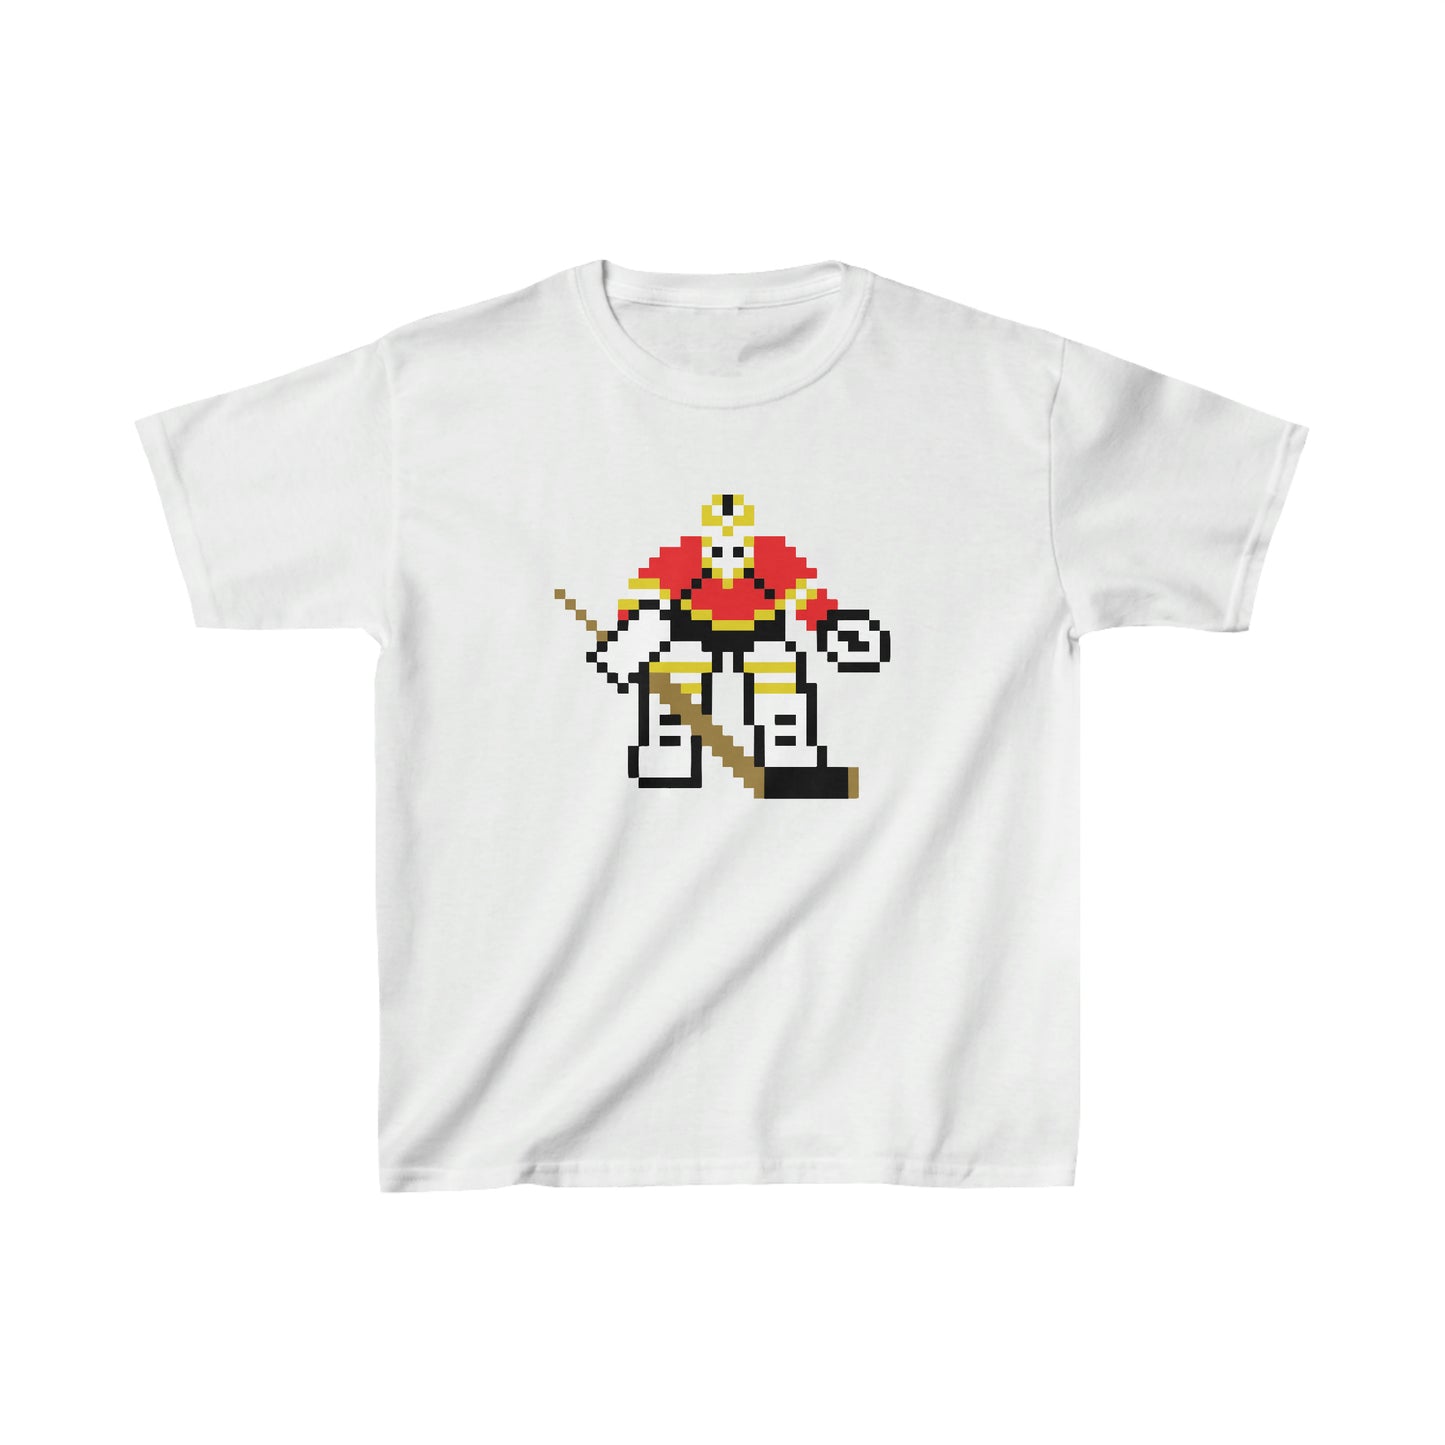 Chel 94 Goalie - Kids Shirt